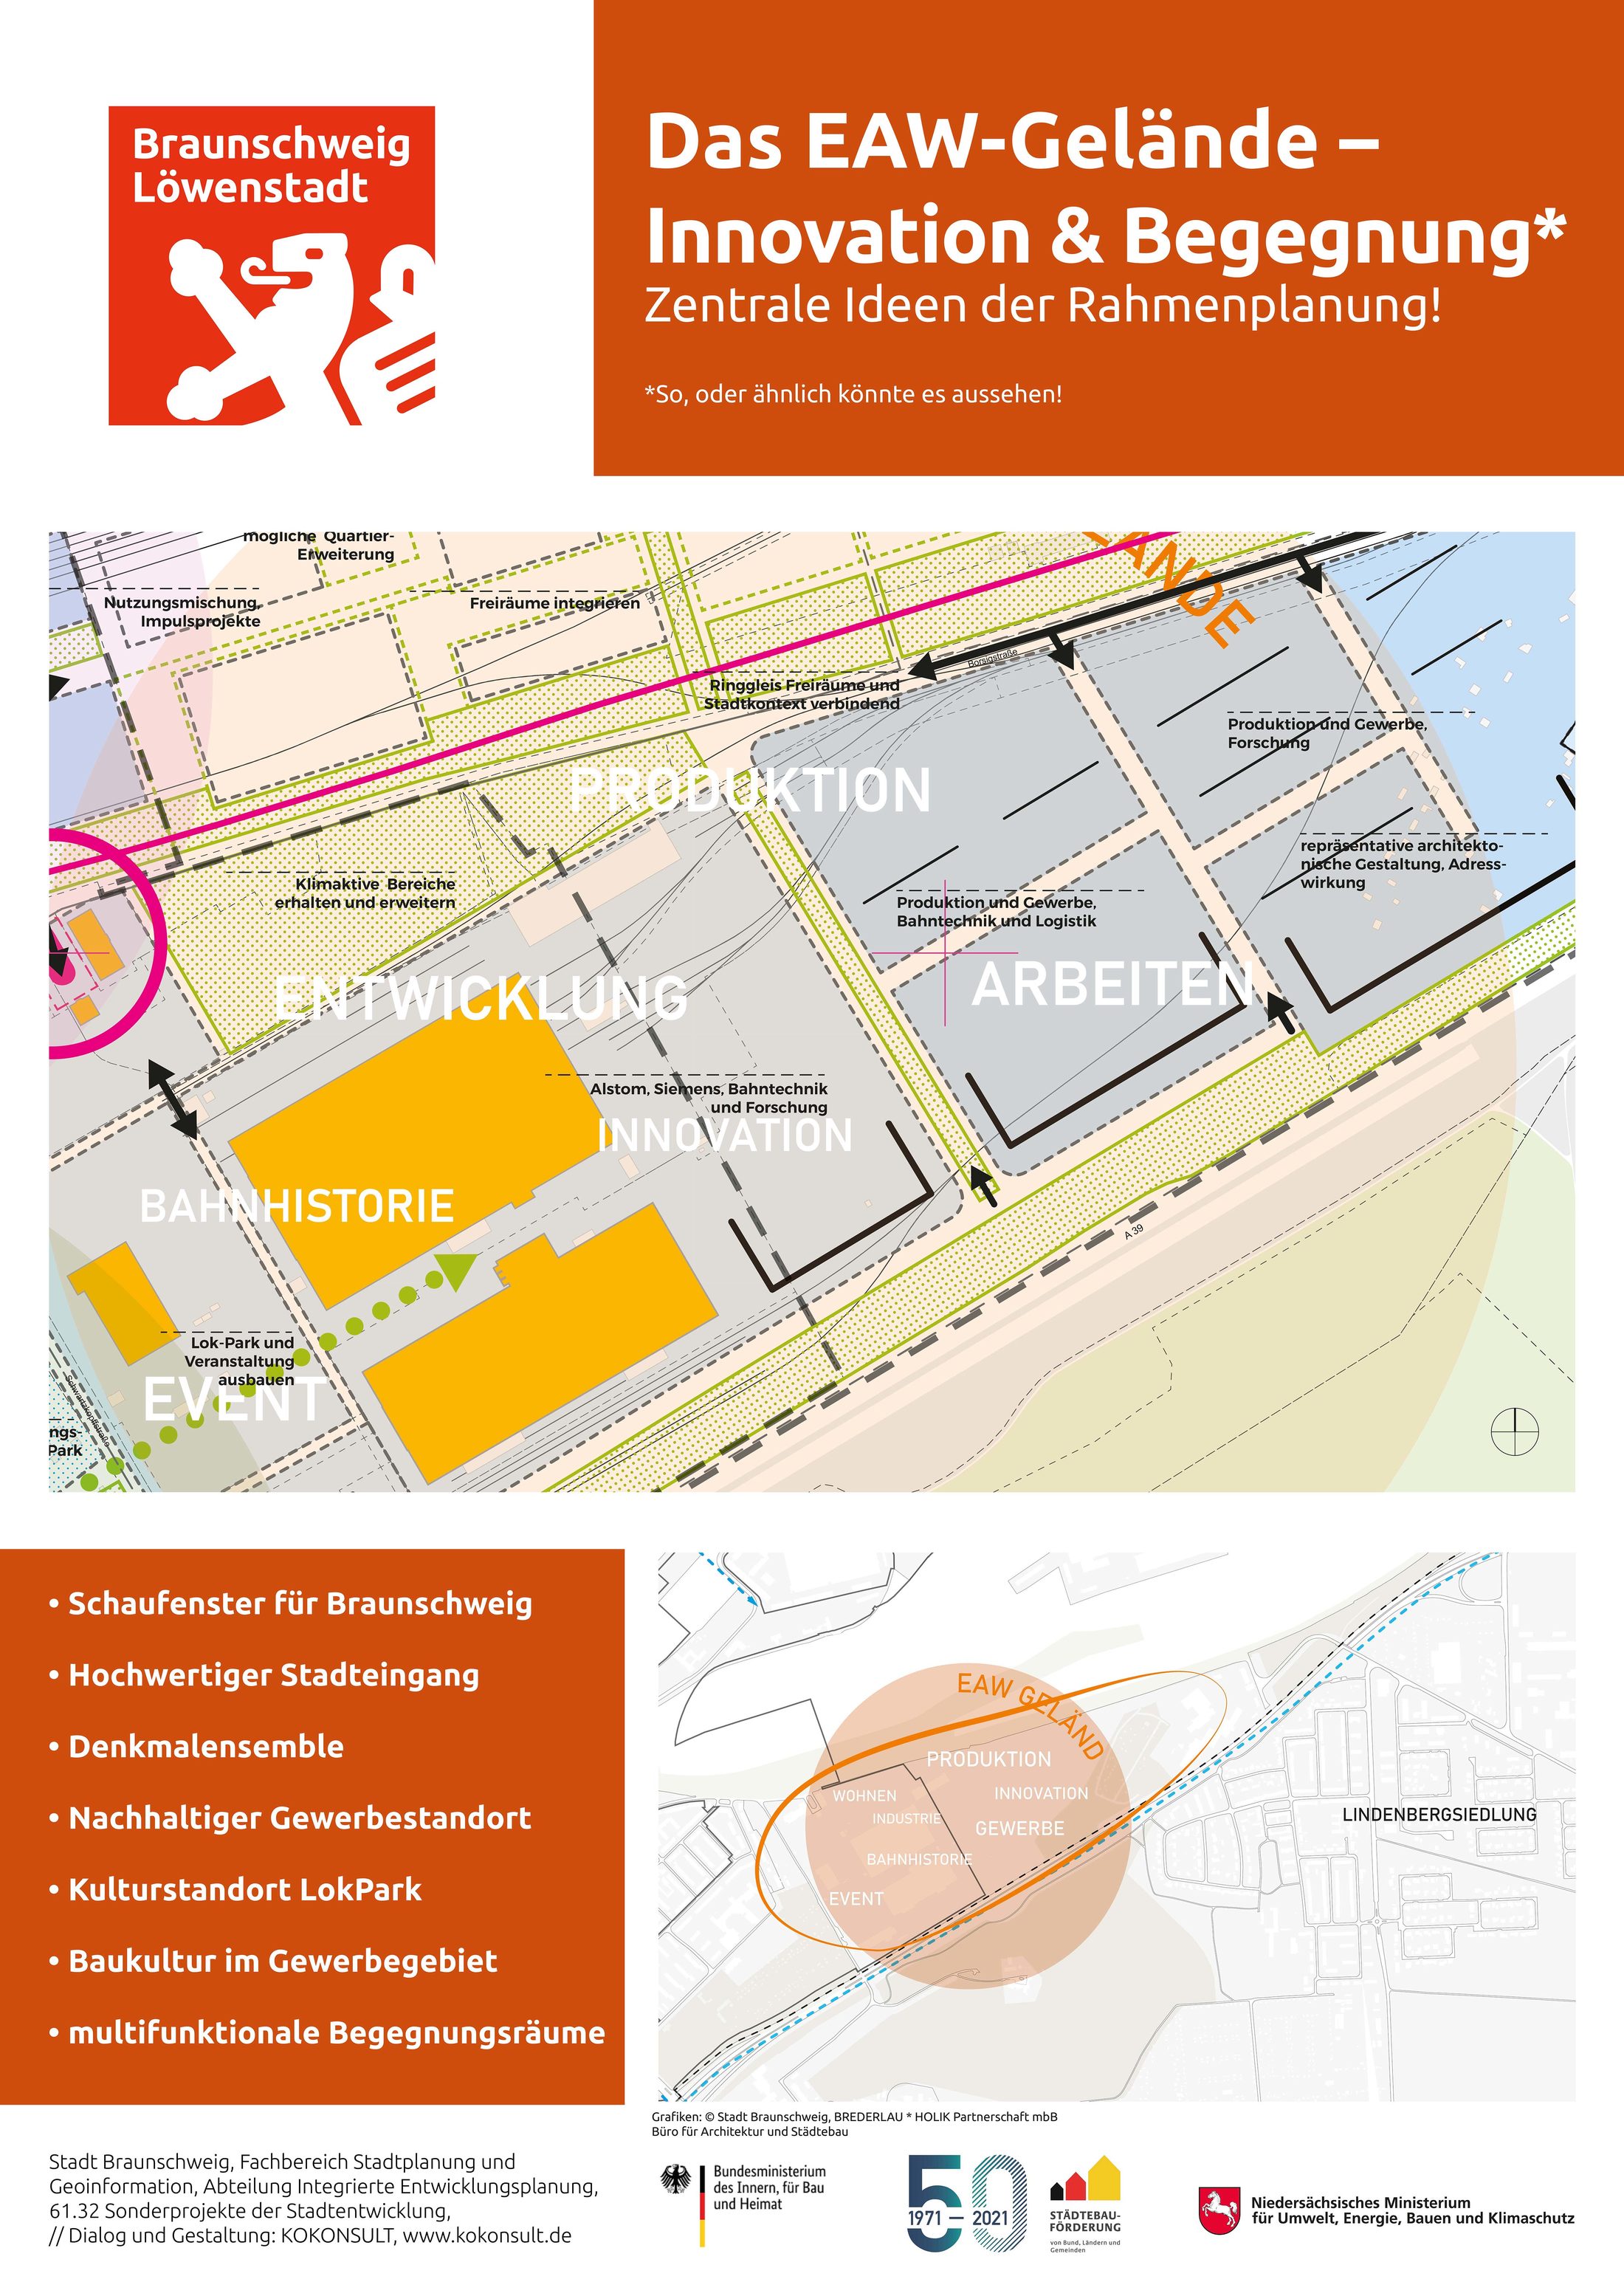 Plakat "Das EAW-Gelände - Innovation & Begegnung - Zentrale Ideen des Rahmenplans"